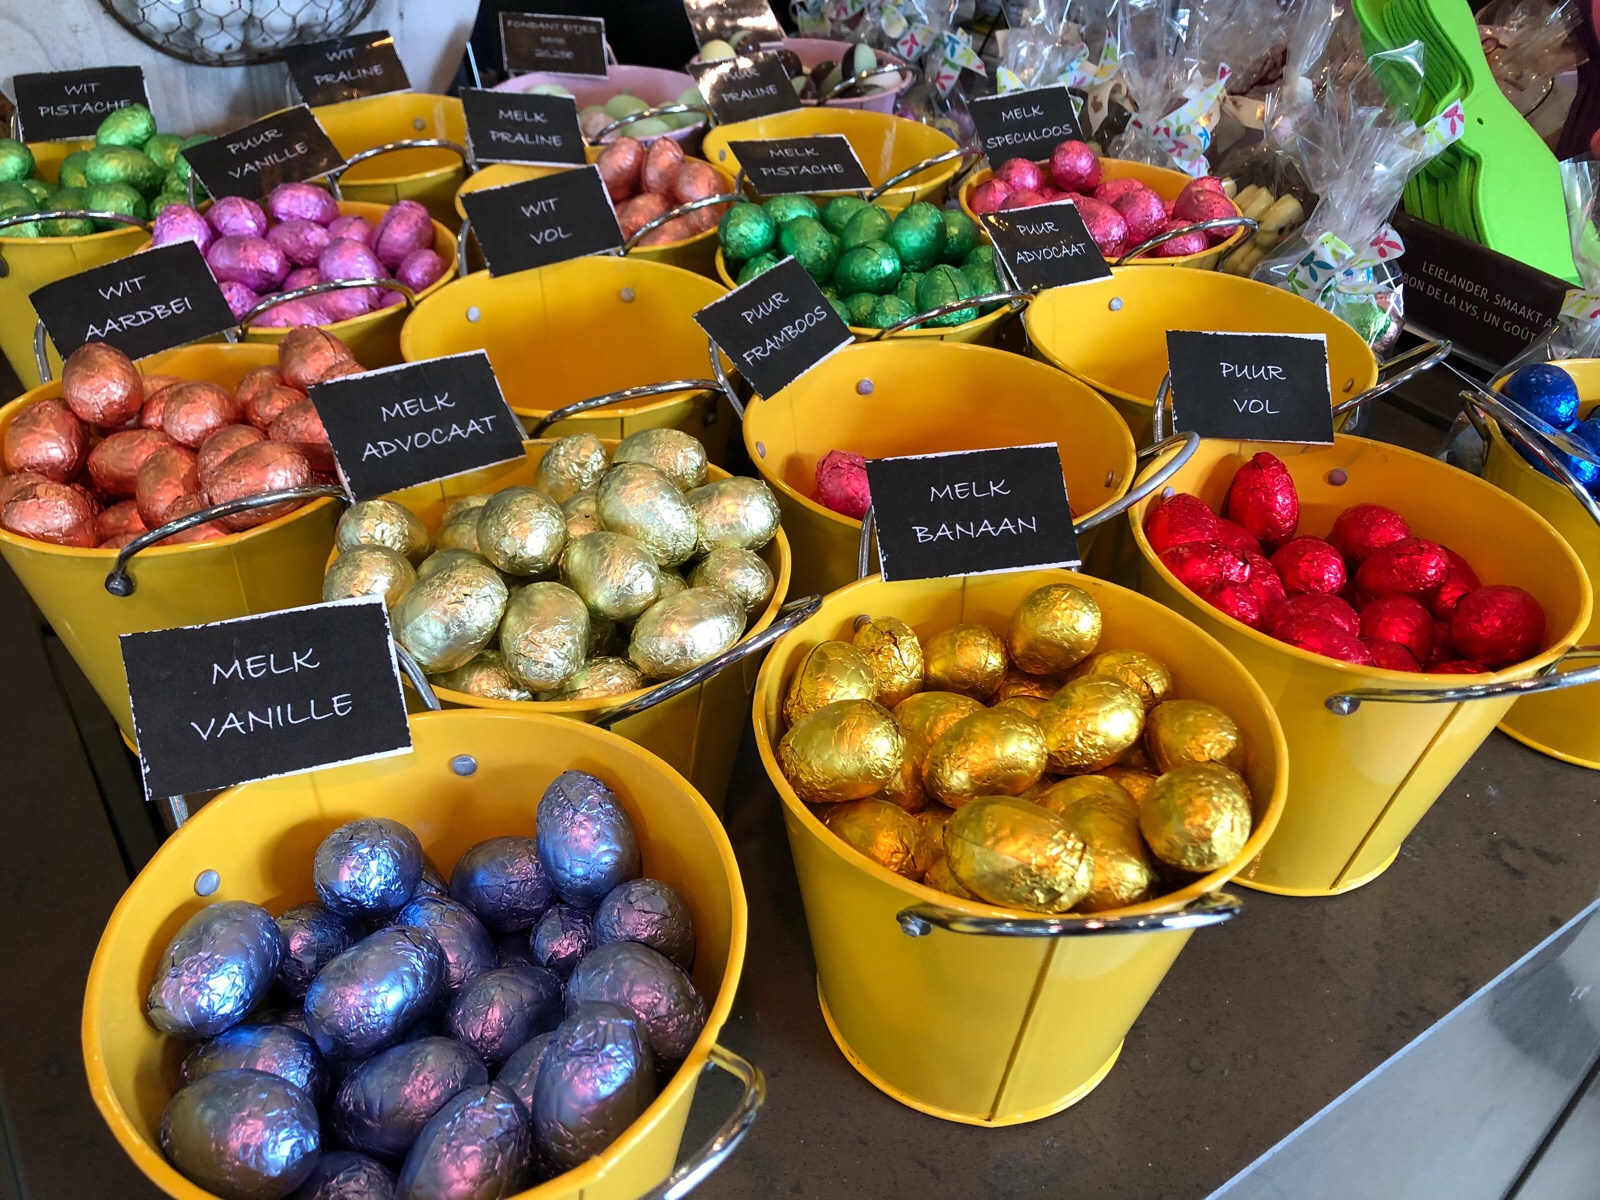 到比利时一定要吃巧克力,一年一季的复活节又来了,你吃蛋了吗